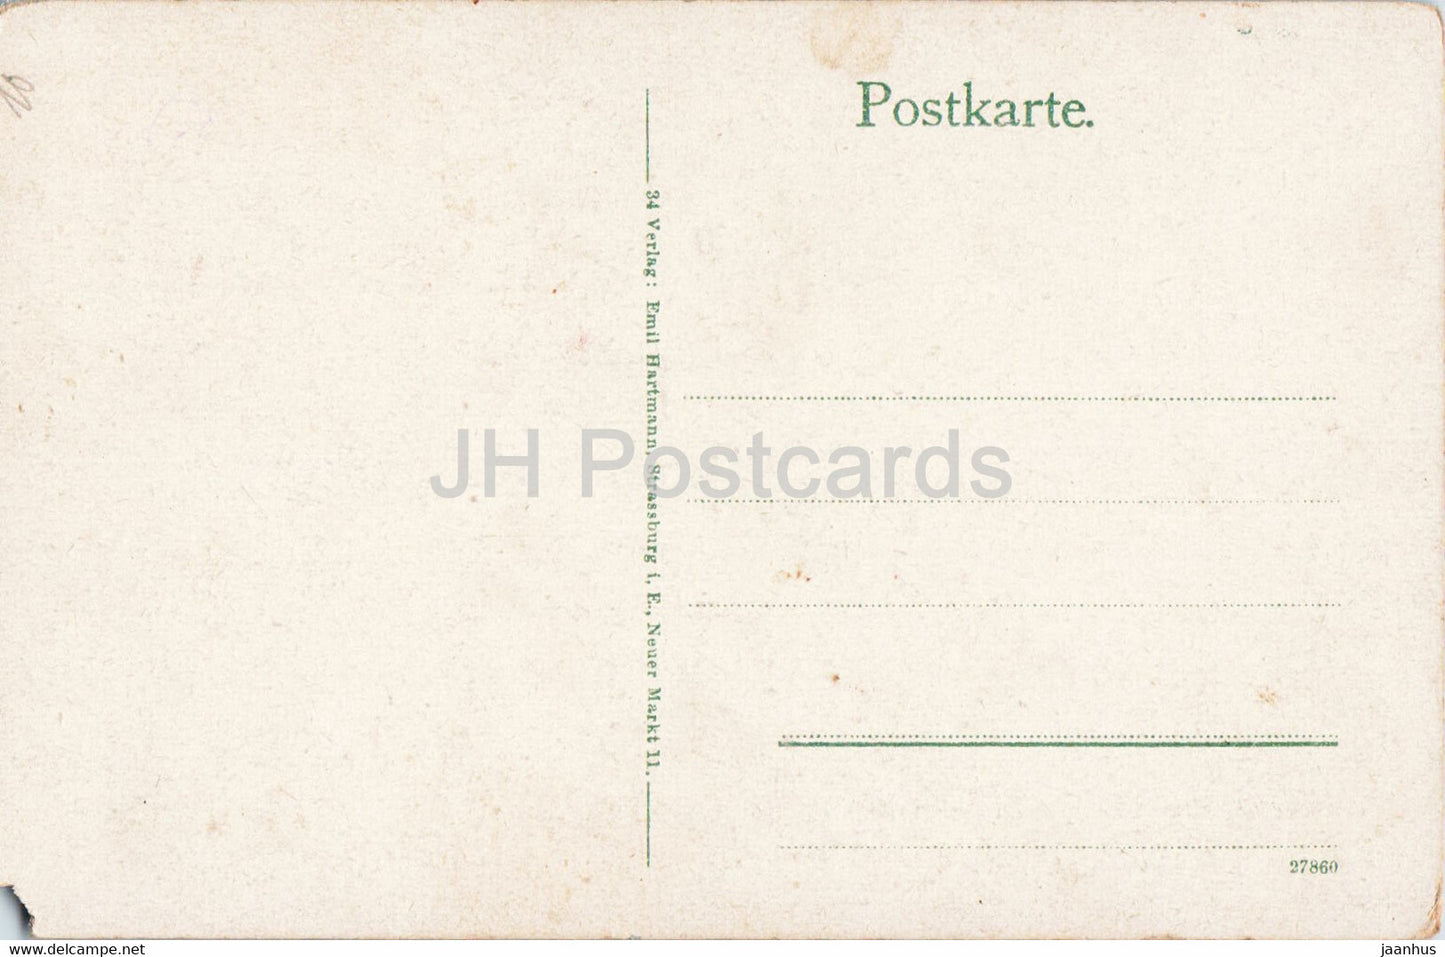 Weisser See 1200 m - Hochvogesen - carte postale ancienne - France - inutilisée